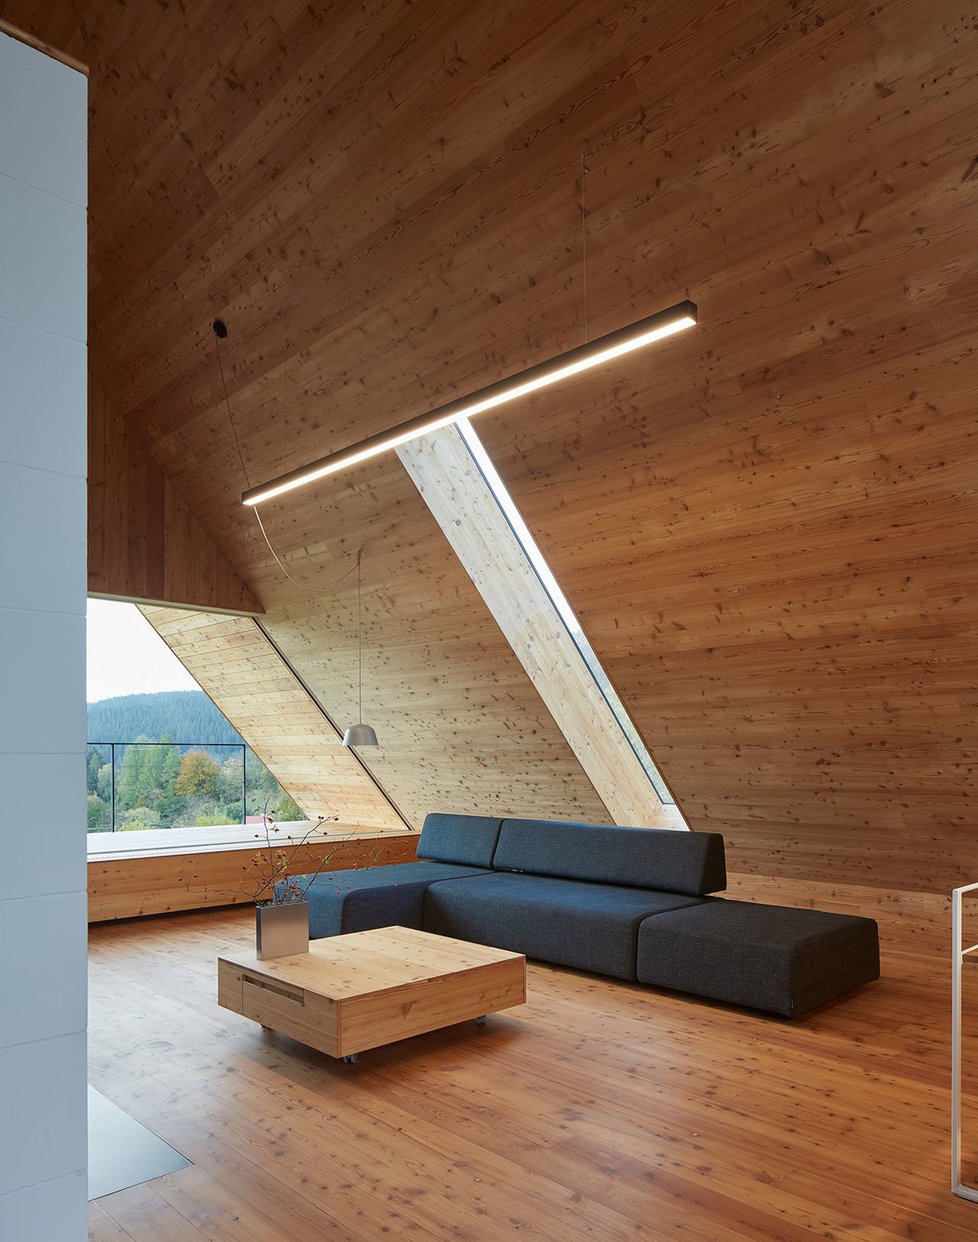 Moderní horská chalupa kombinuje lidovou architekturu s minimalismem